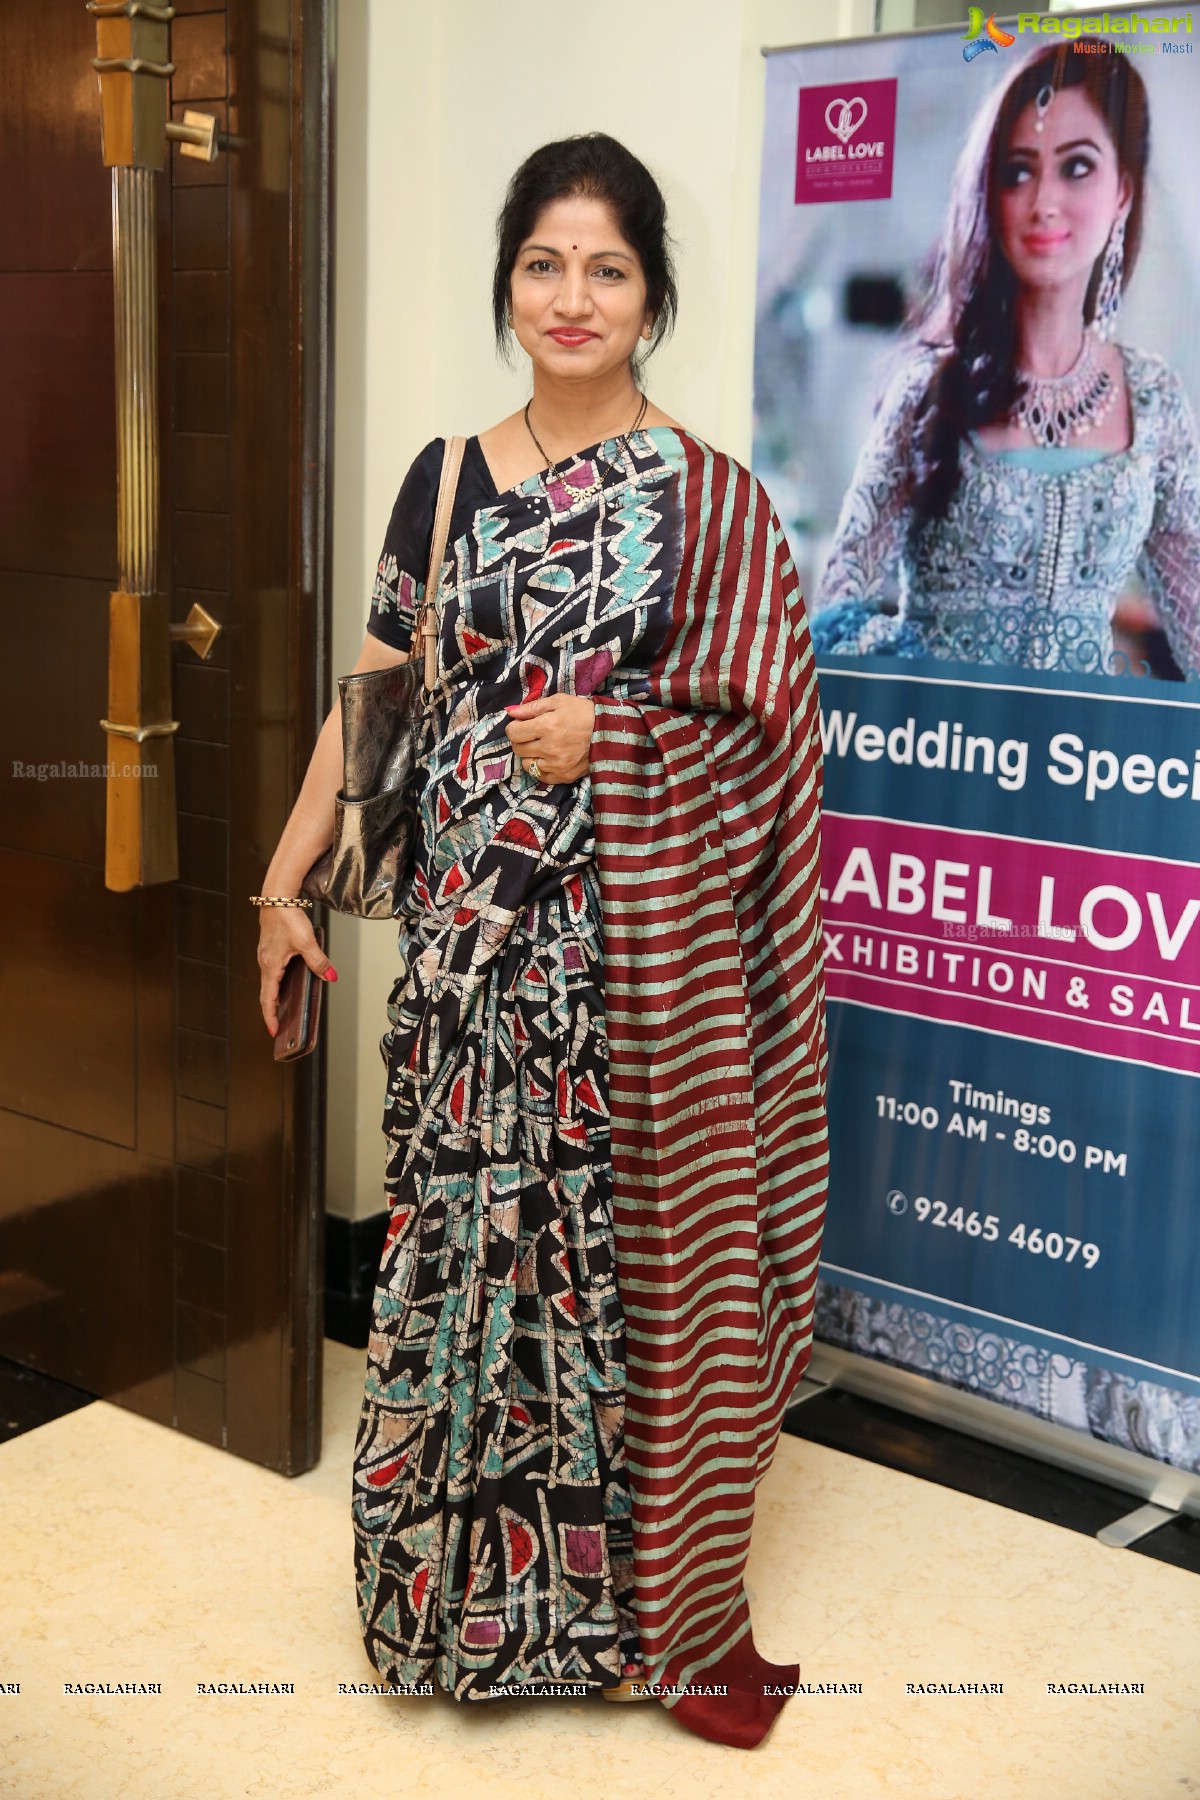 Label Love Wedding Exhibition Begins at Taj Deccan, Hyderabad